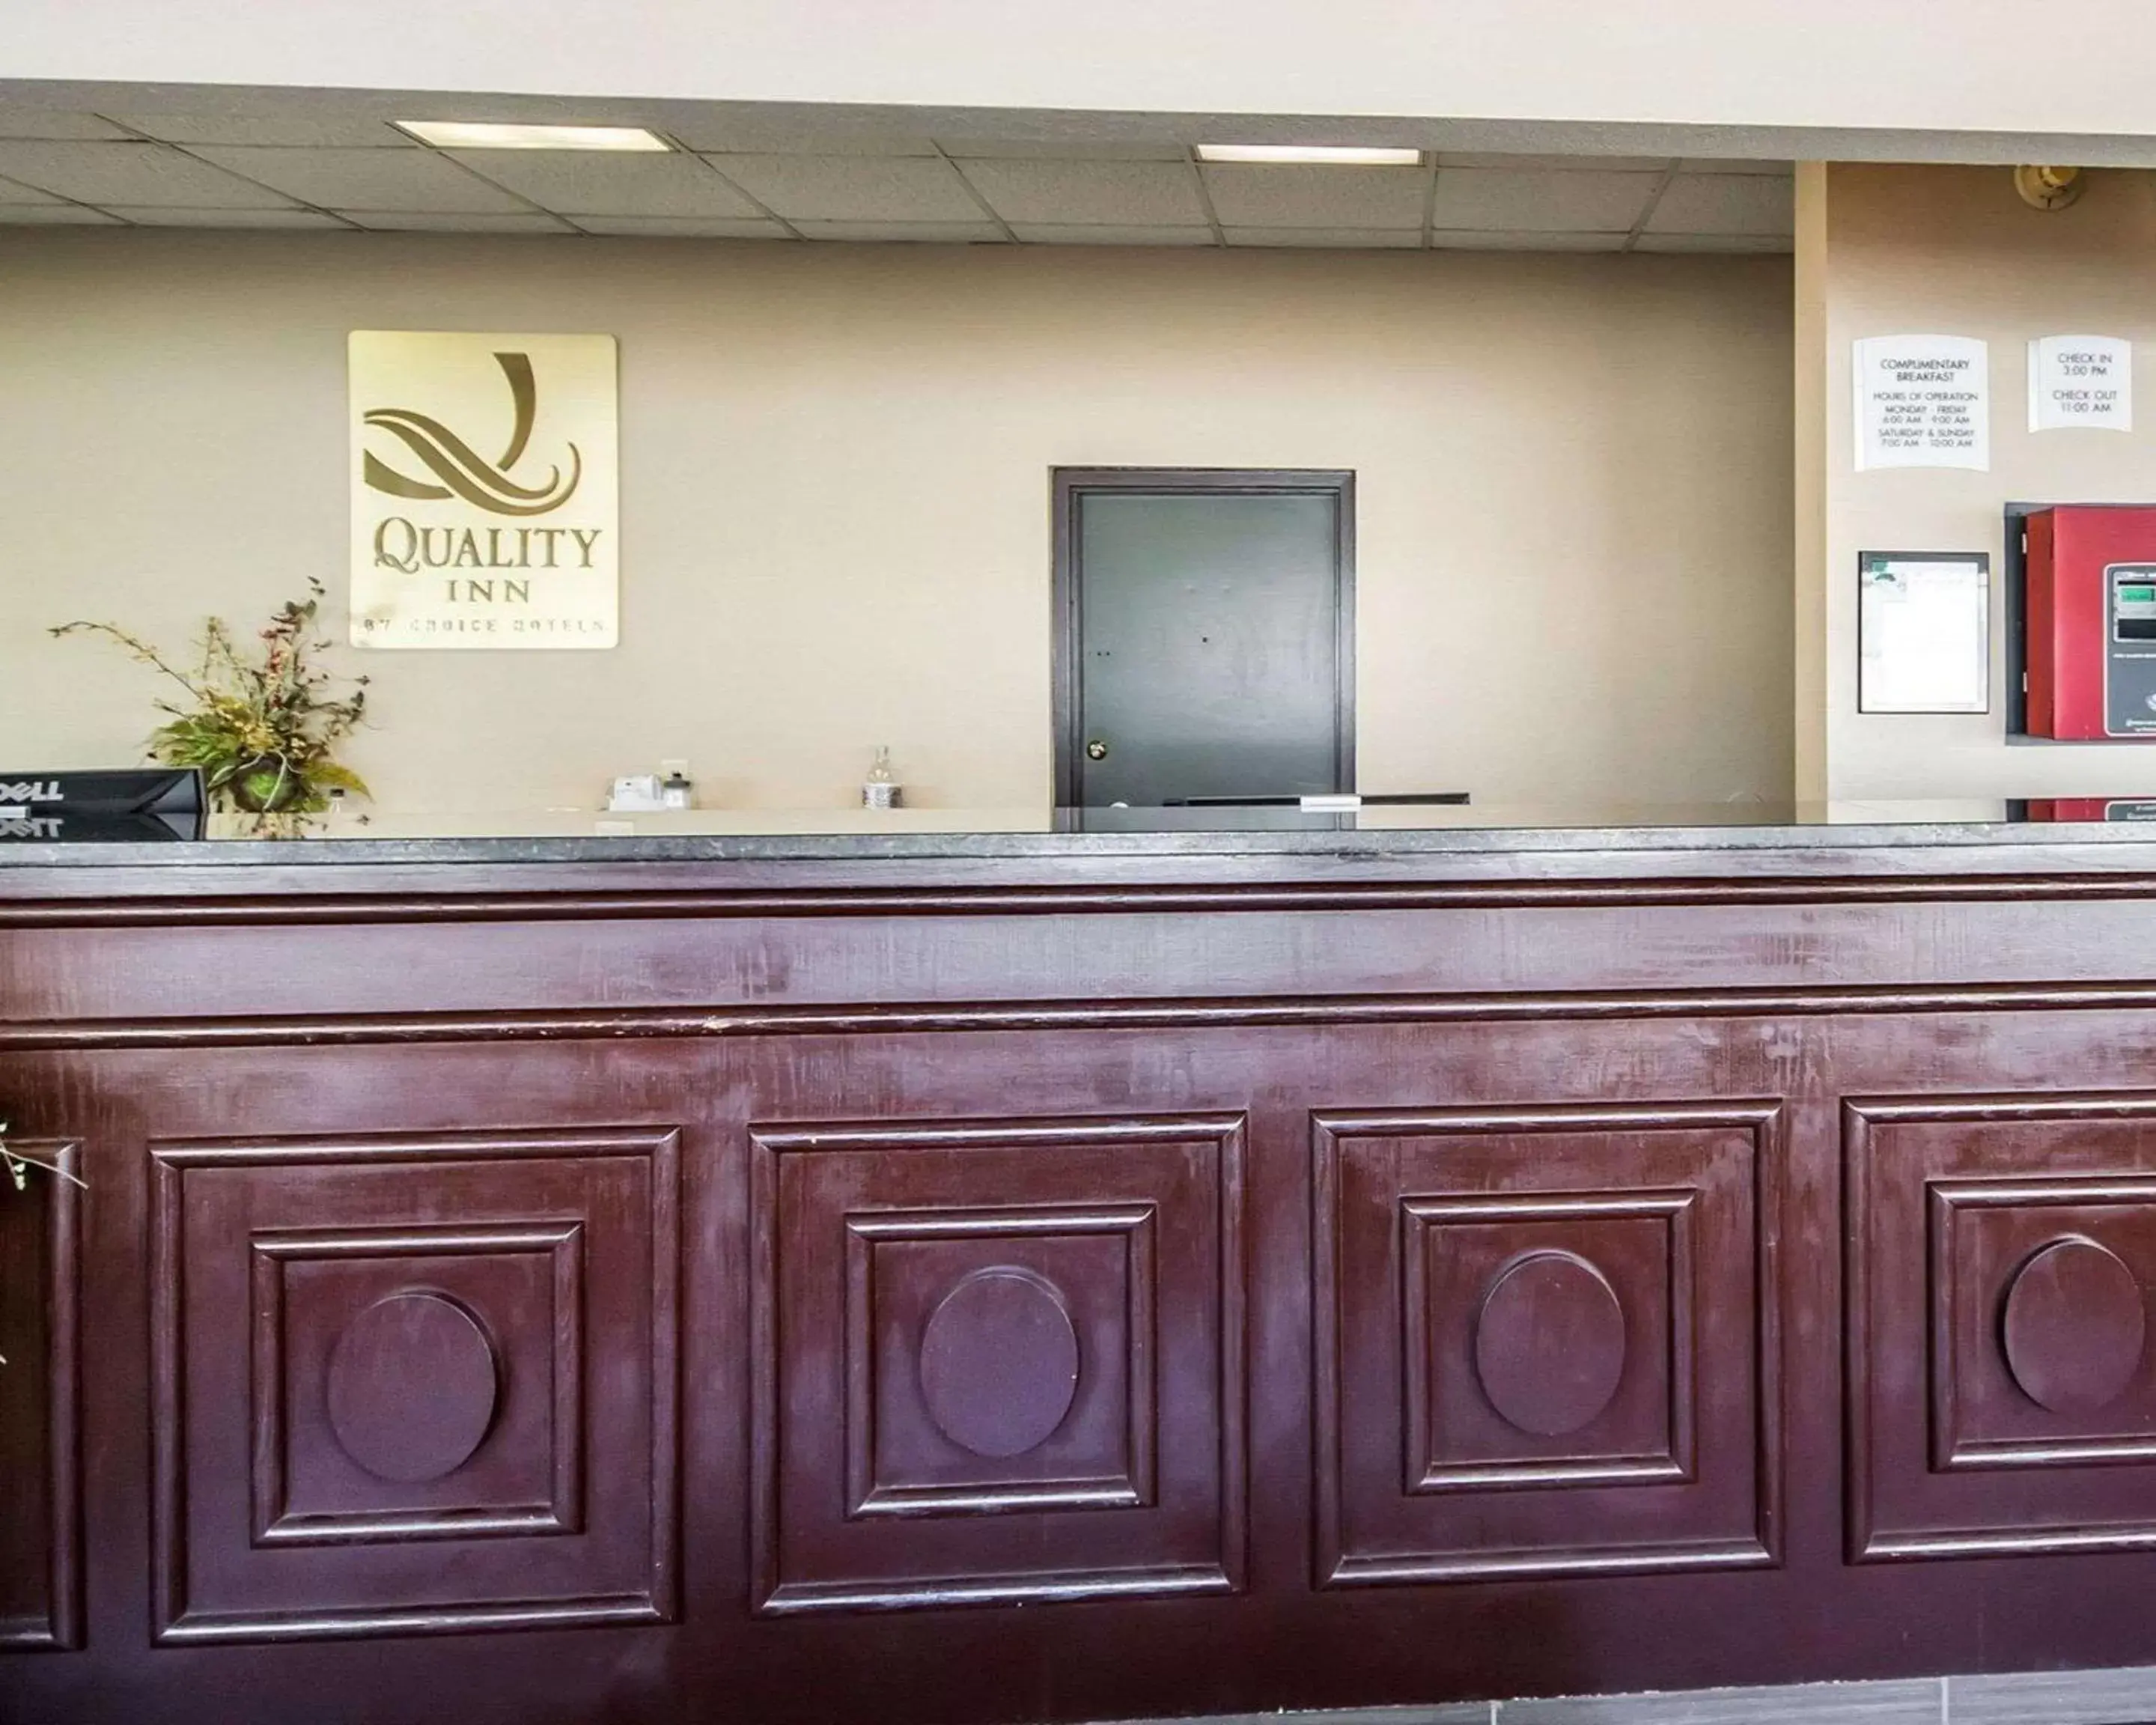 Lobby or reception, Lobby/Reception in Quality Inn & Suites Elizabethtown